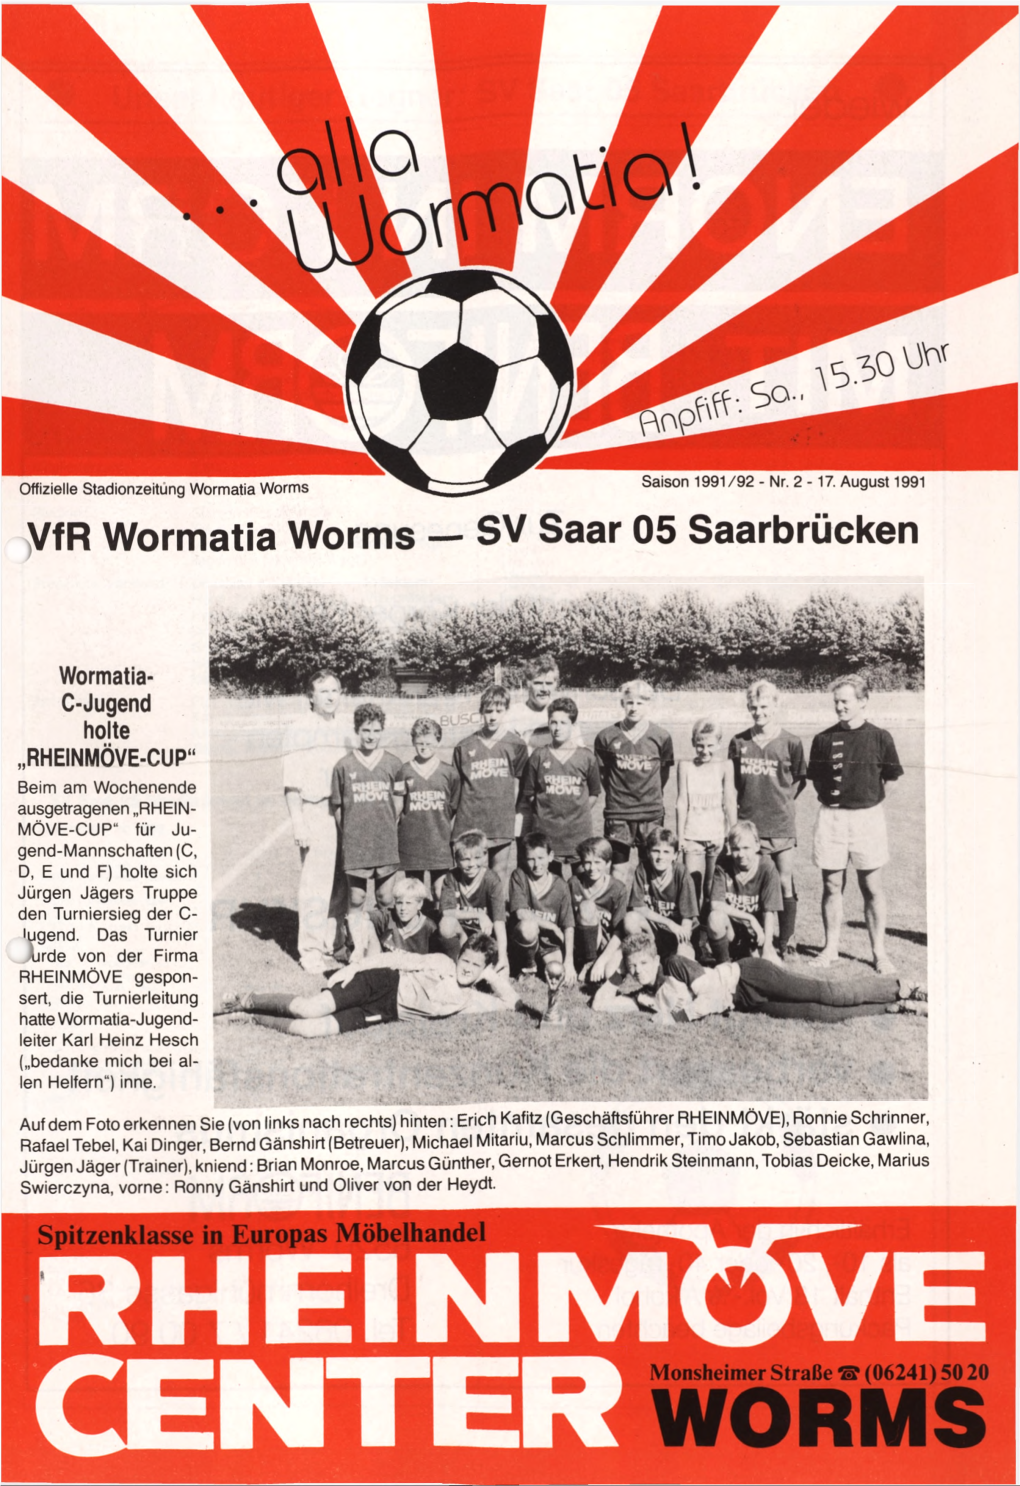 Vfr Wormatia Worms — SV Saar 05 Saarbrücken